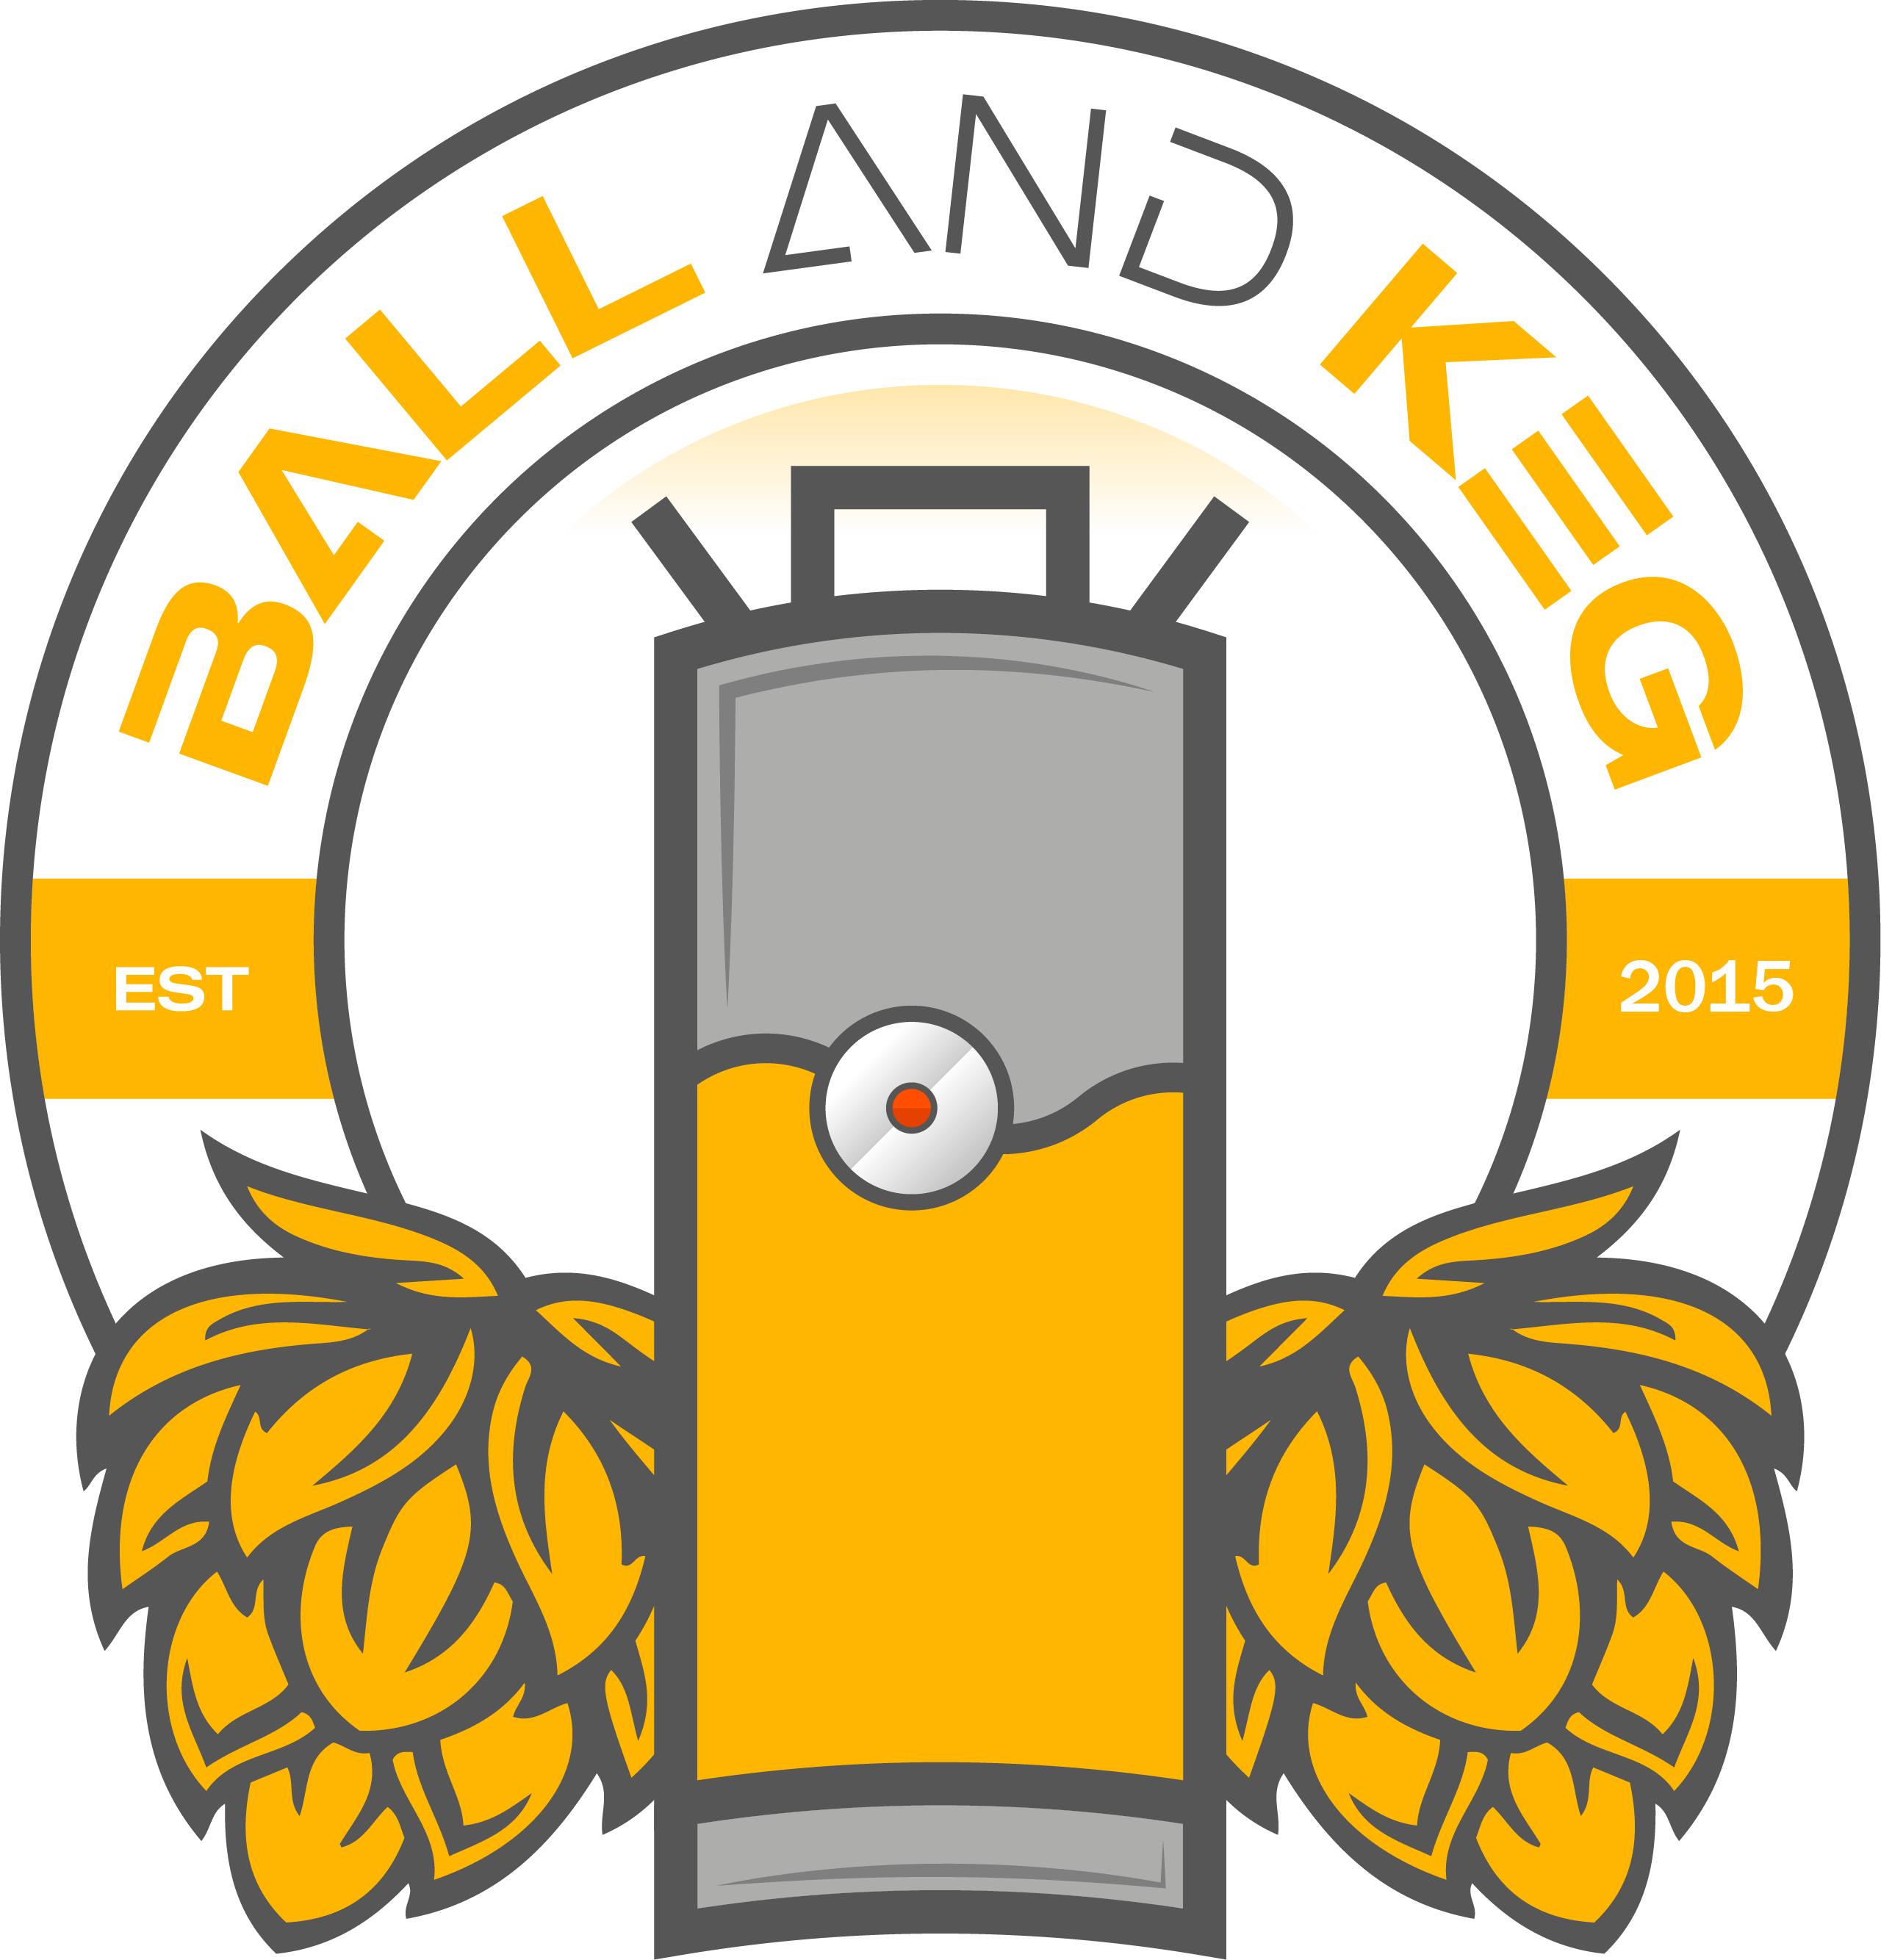 Ball and Keg - Logo